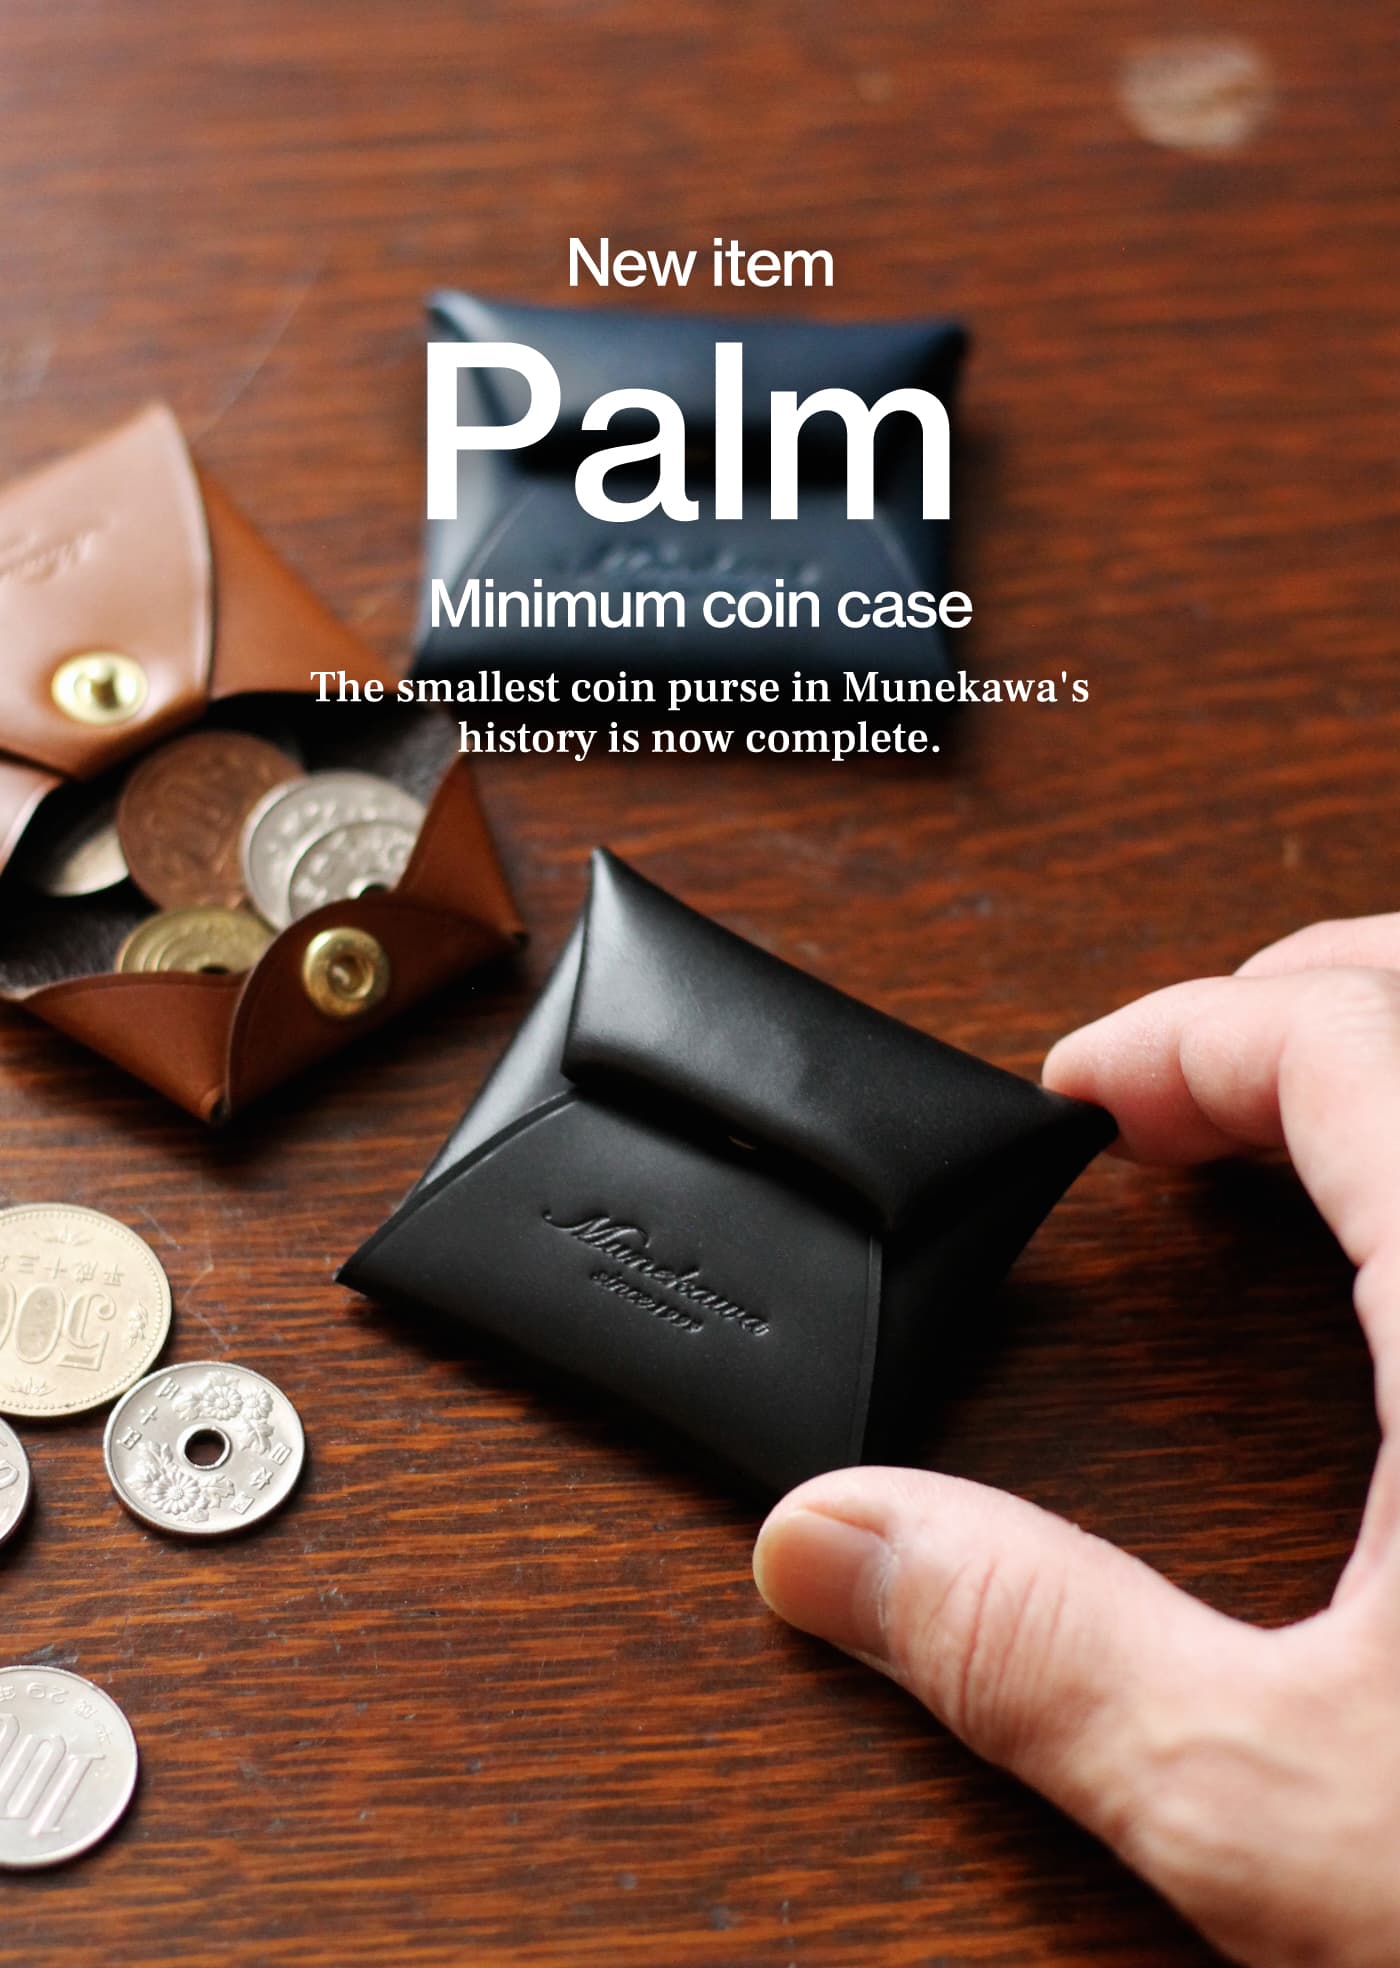 Munekawa 史上最小!新作コインケース「Palm」 munekawa